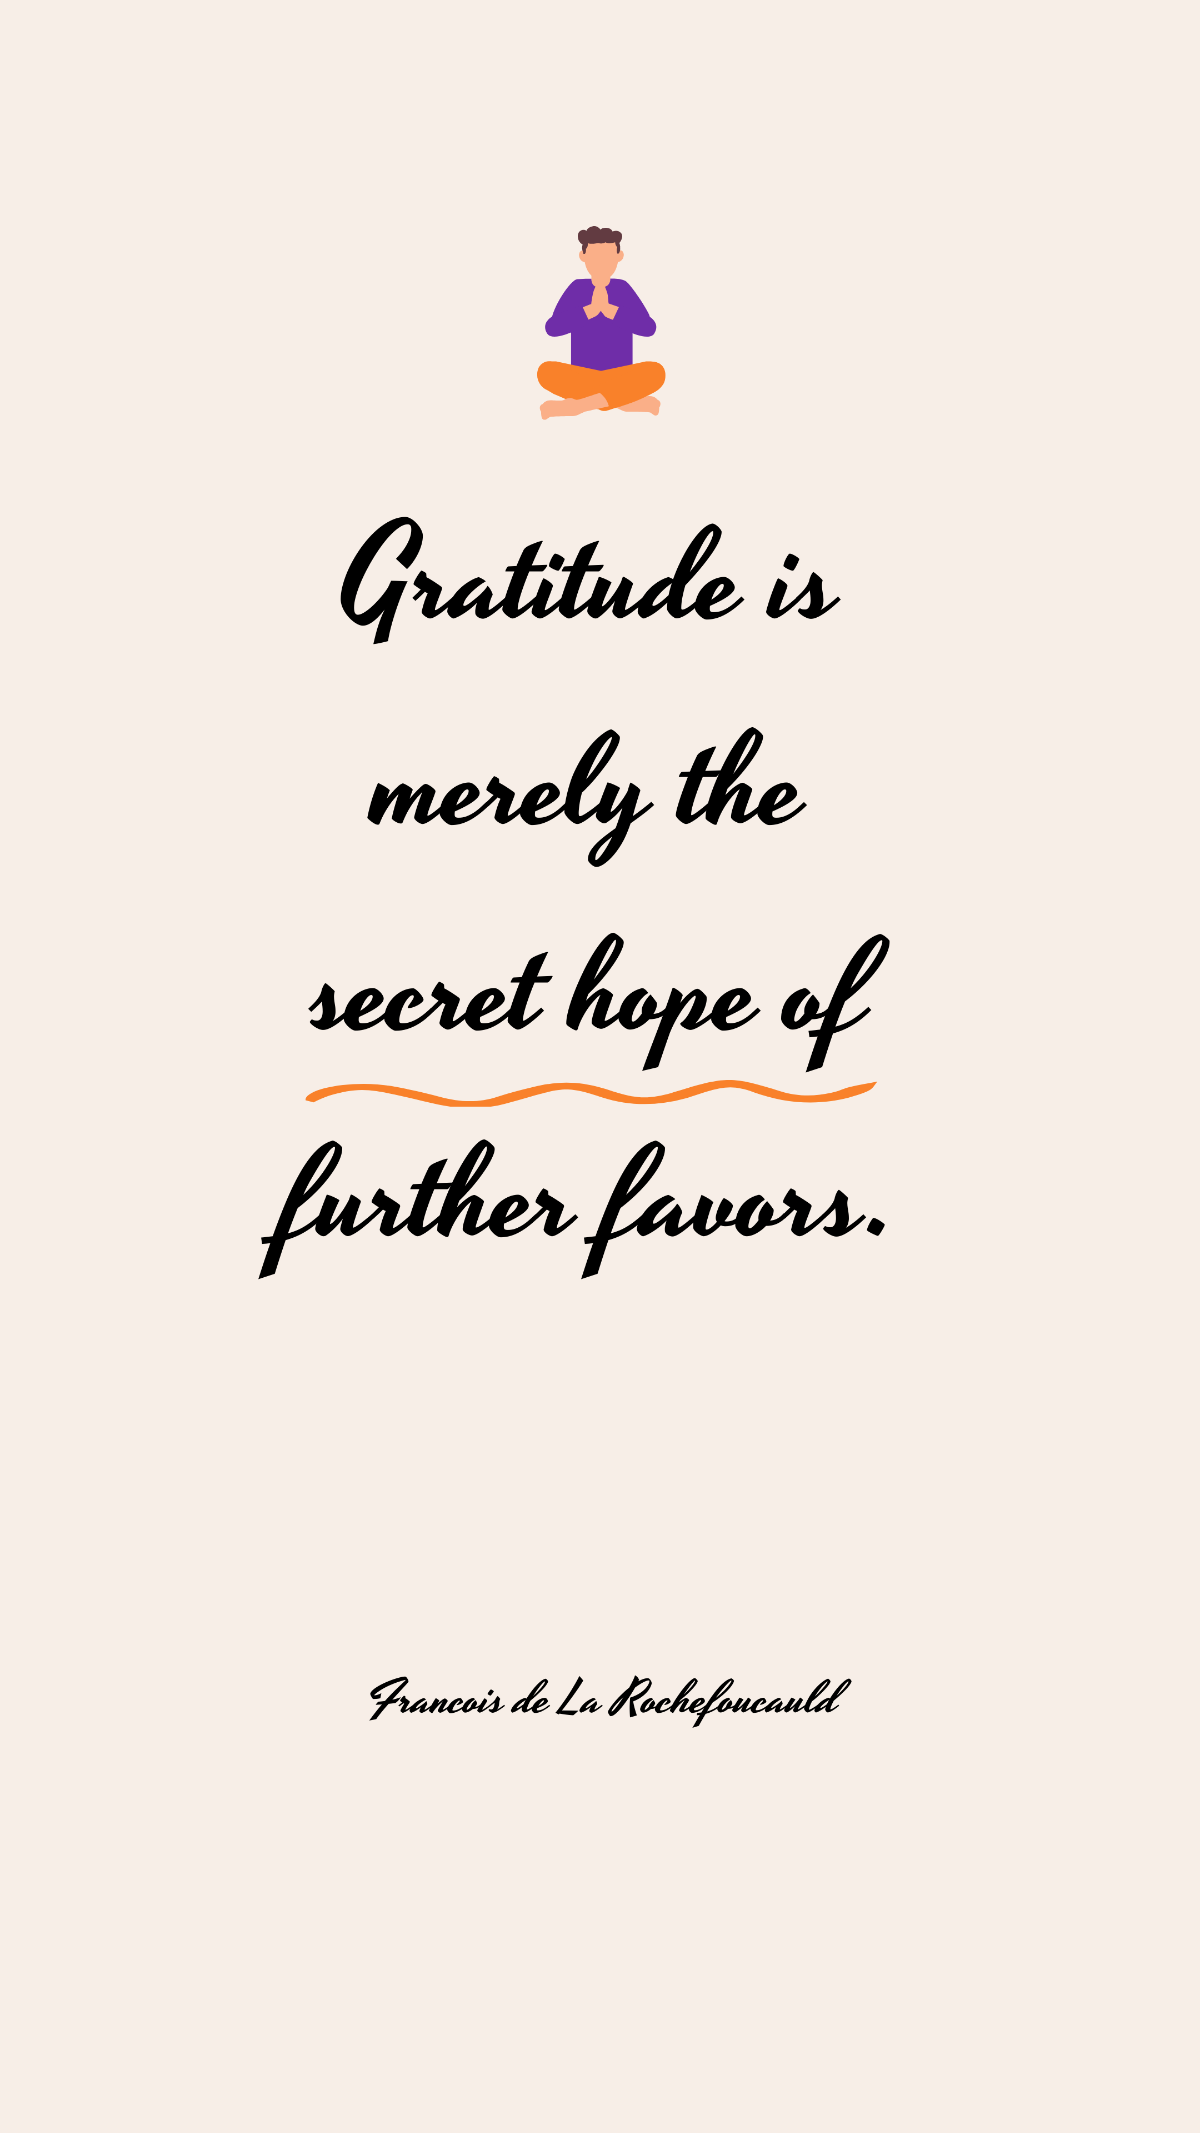 Free Francois de La Rochefoucauld - Gratitude is merely the secret hope of further favors. Template